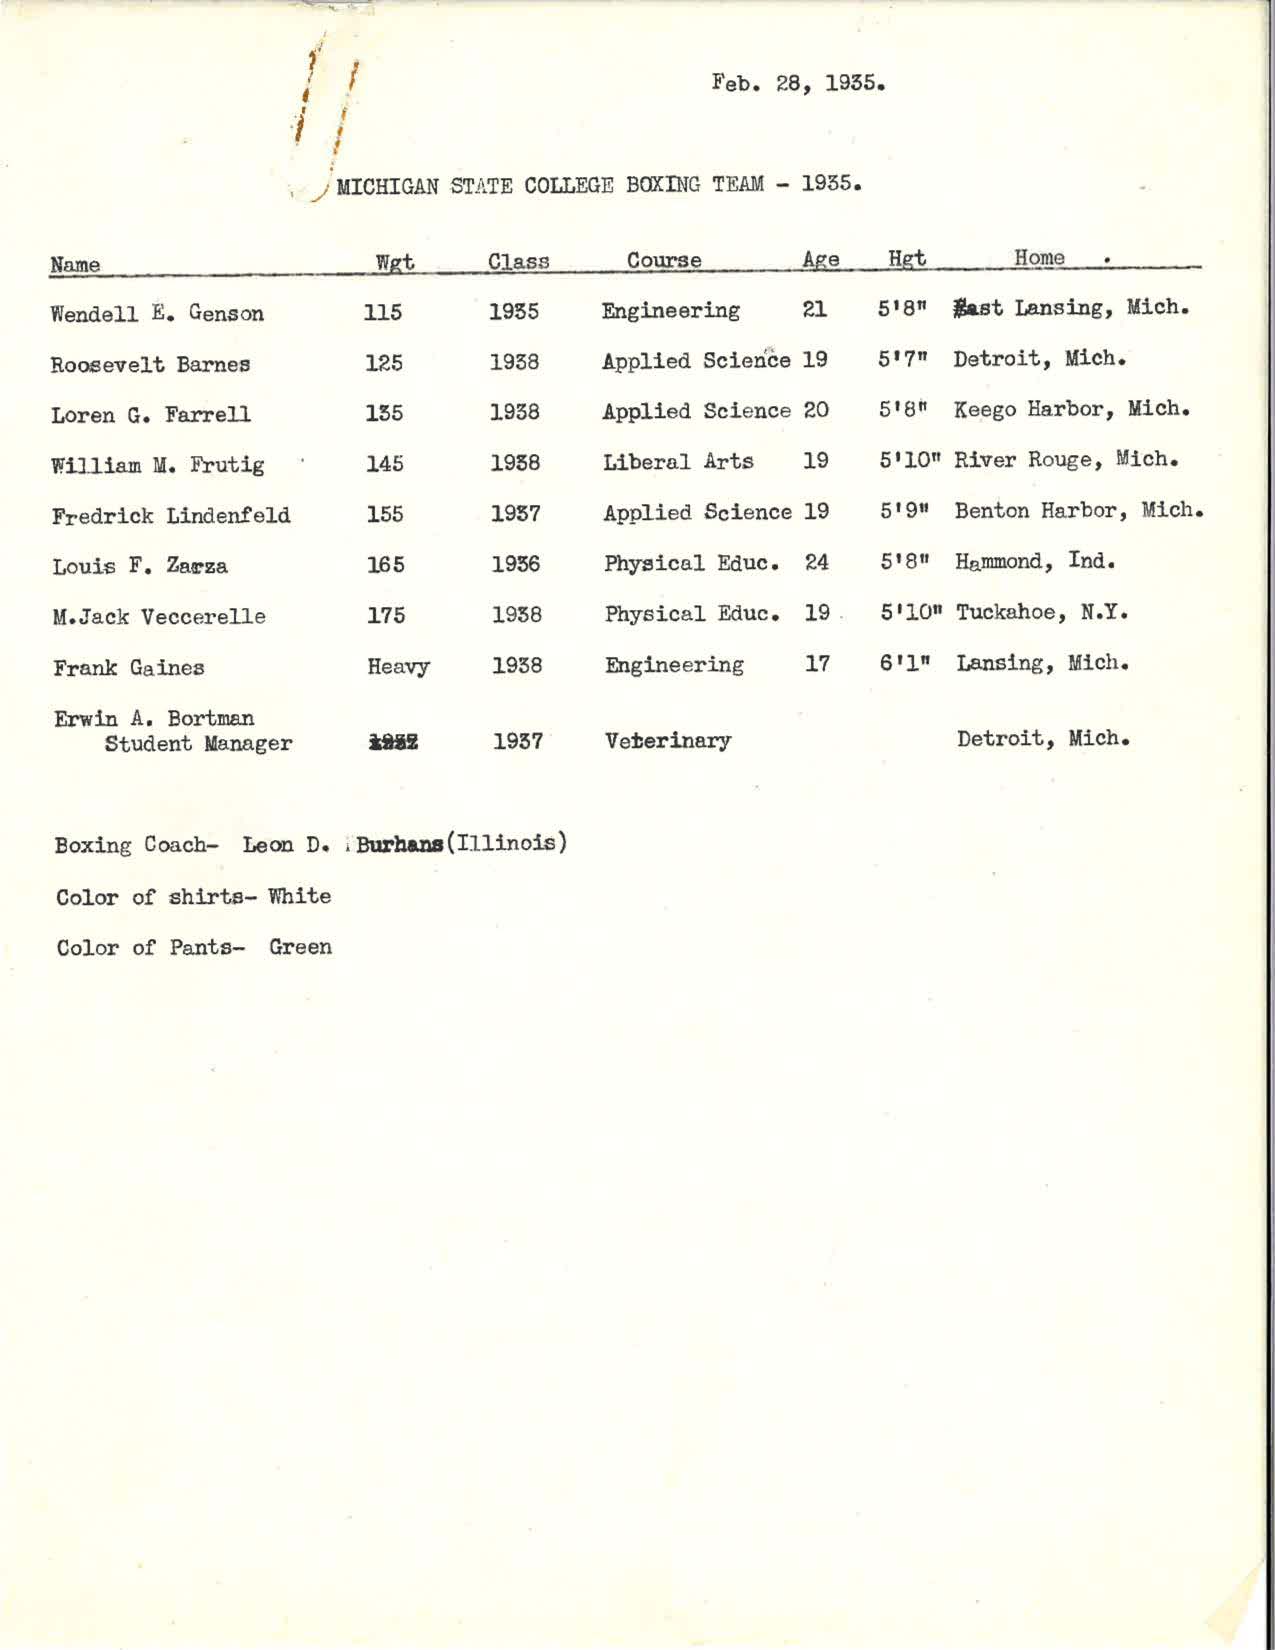 MSC Boxing Team Roster, 1935